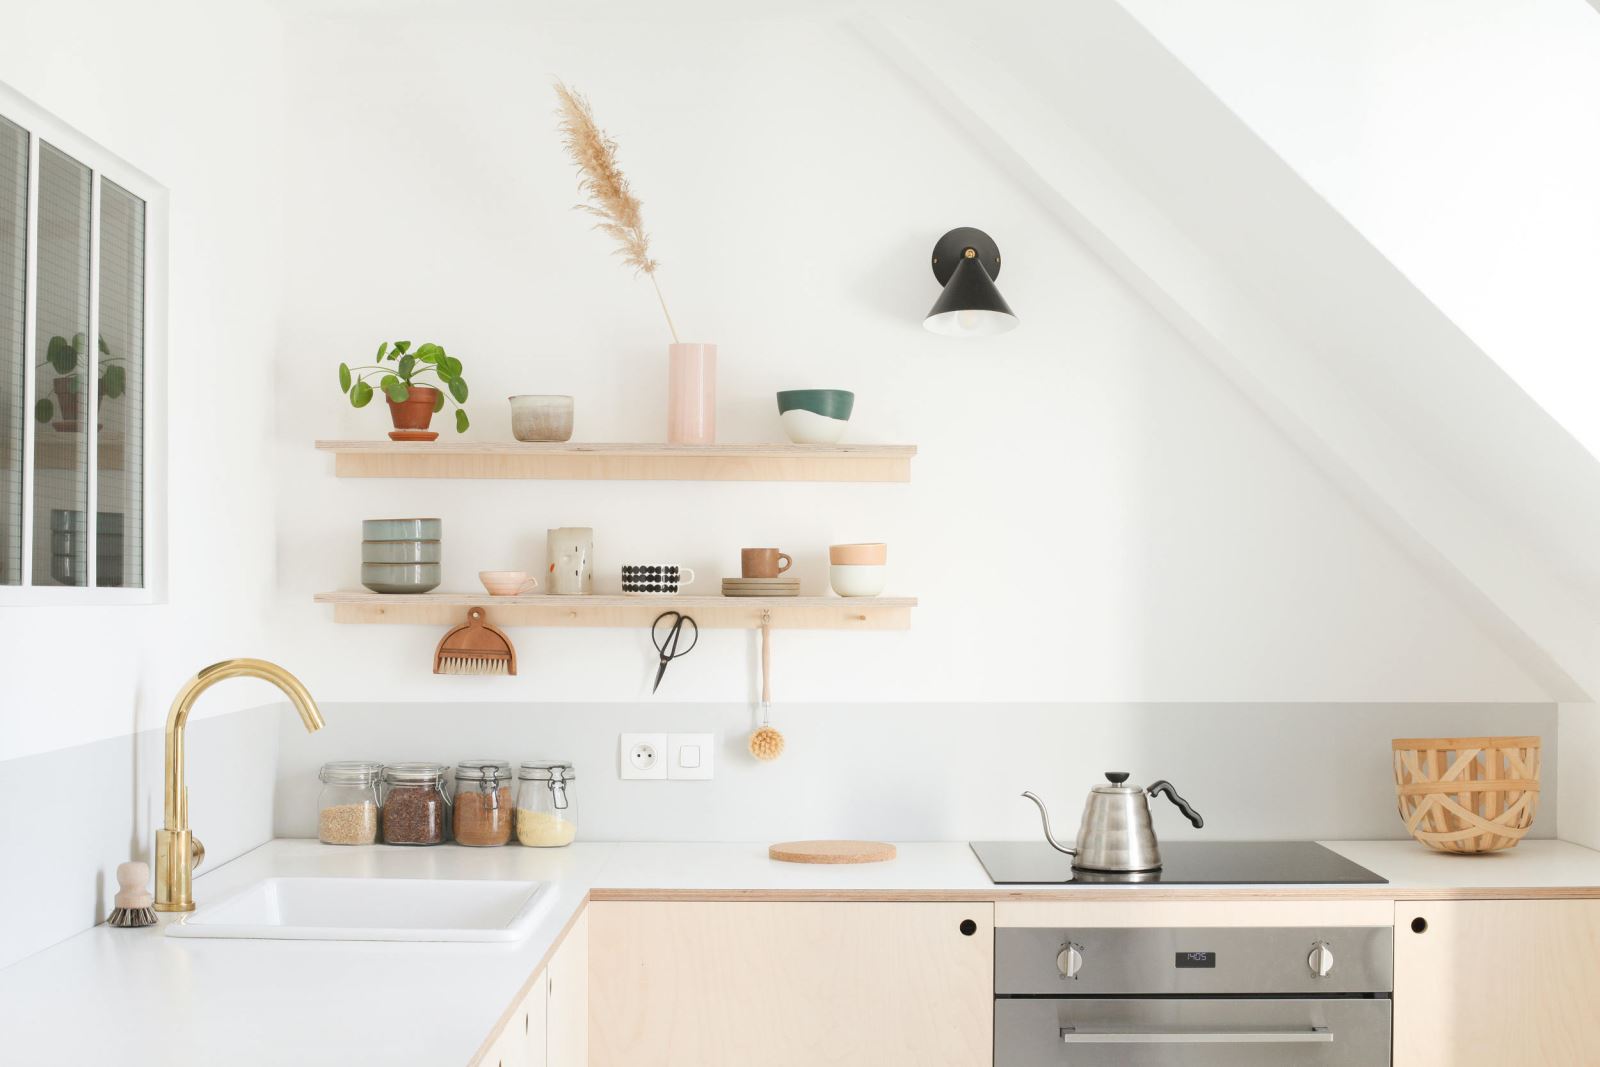 Thiết kế nội thất nhà ở cho phòng bếp cần chú ý những đặc điểm gì?